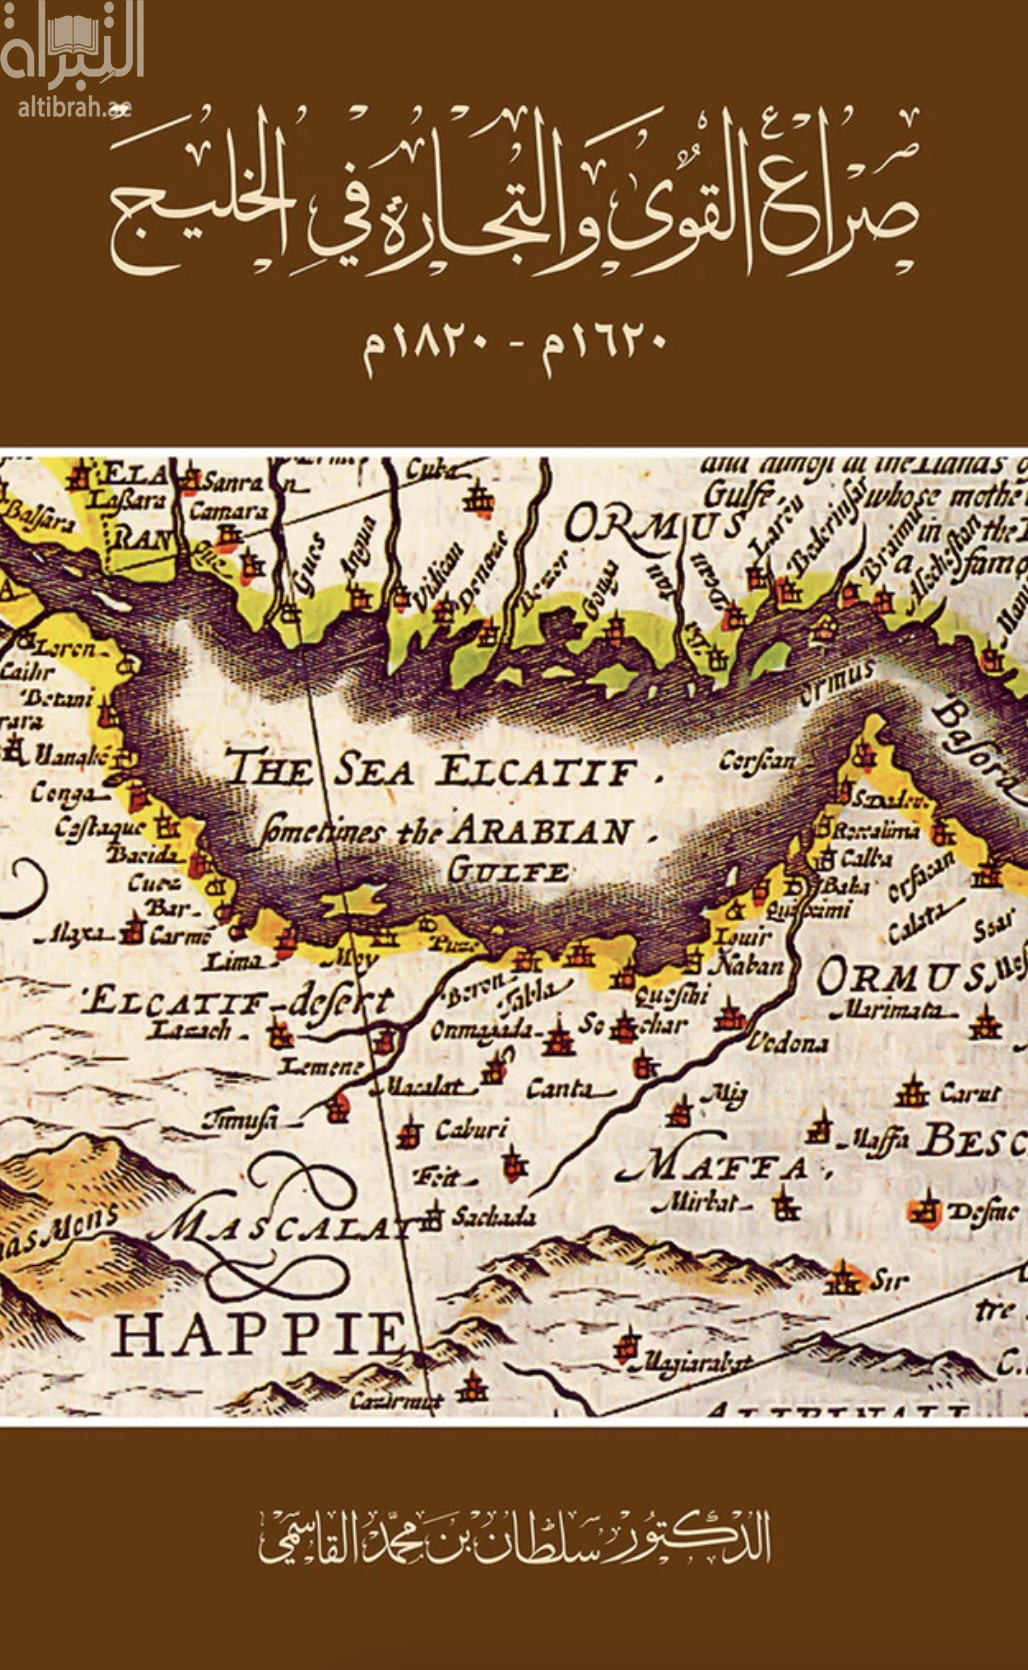 صراع القوى والتجارة في الخليج 1620 - 1820 م